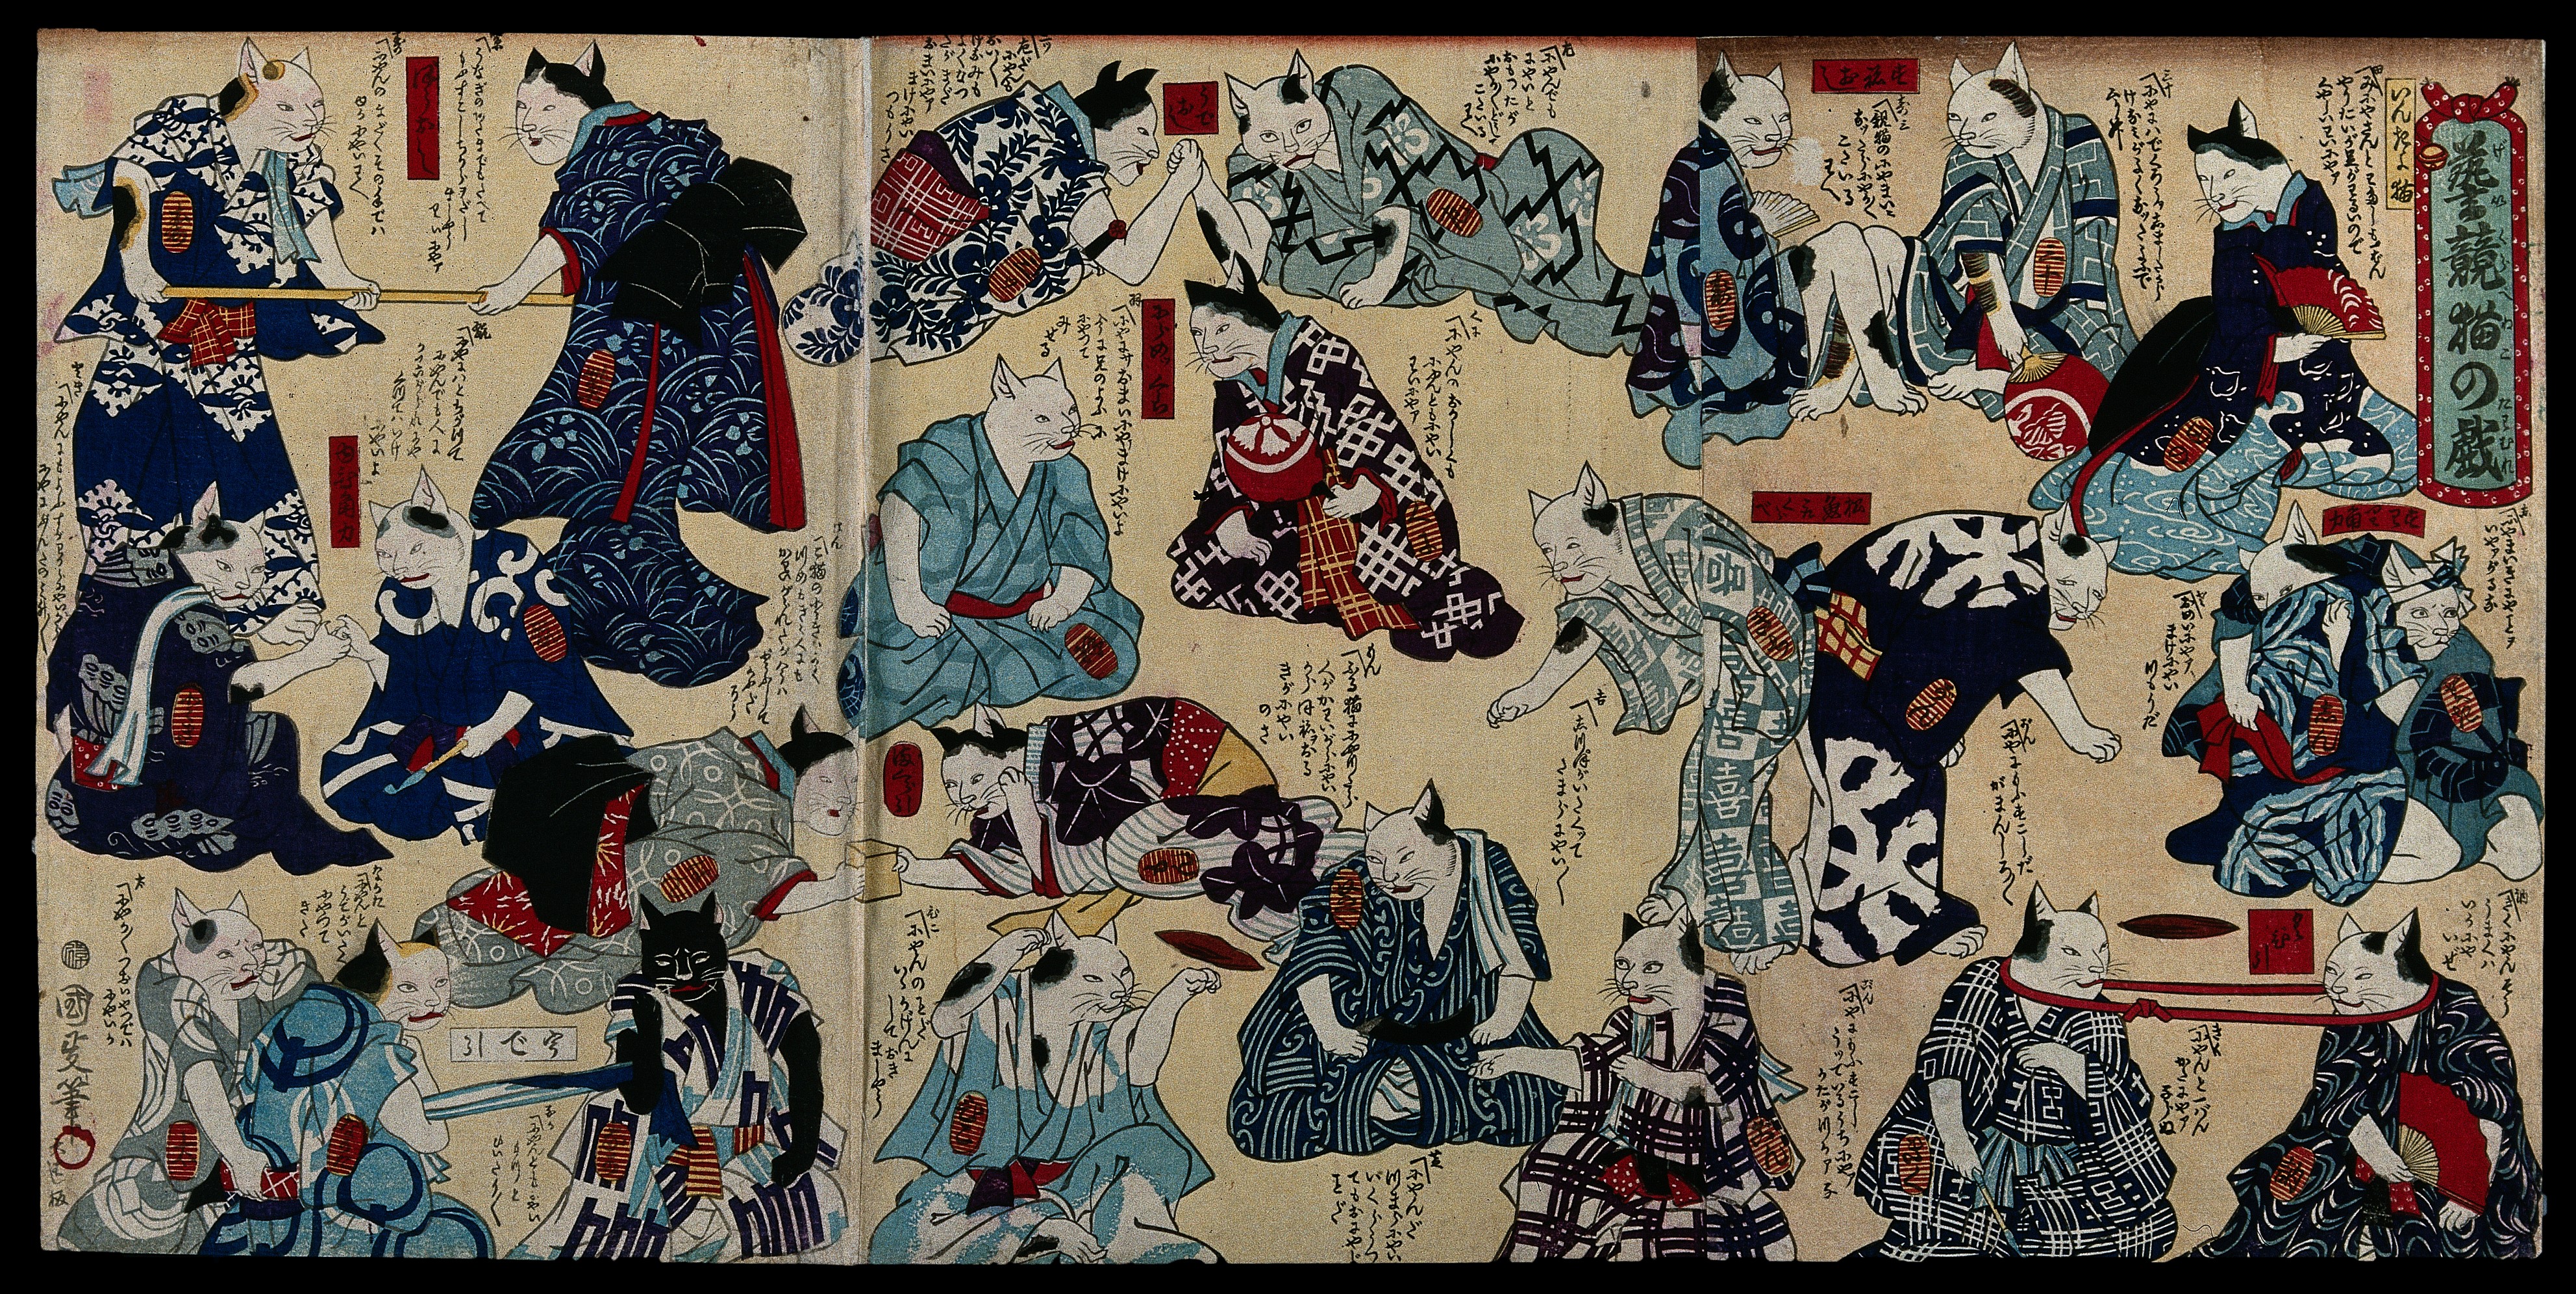 Gatos con vestimenta humana que juegan una variedad de juegos, incluyendo lucha libre y tira y afloja by Utagawa Kunimasa IV - 1870s Europeana